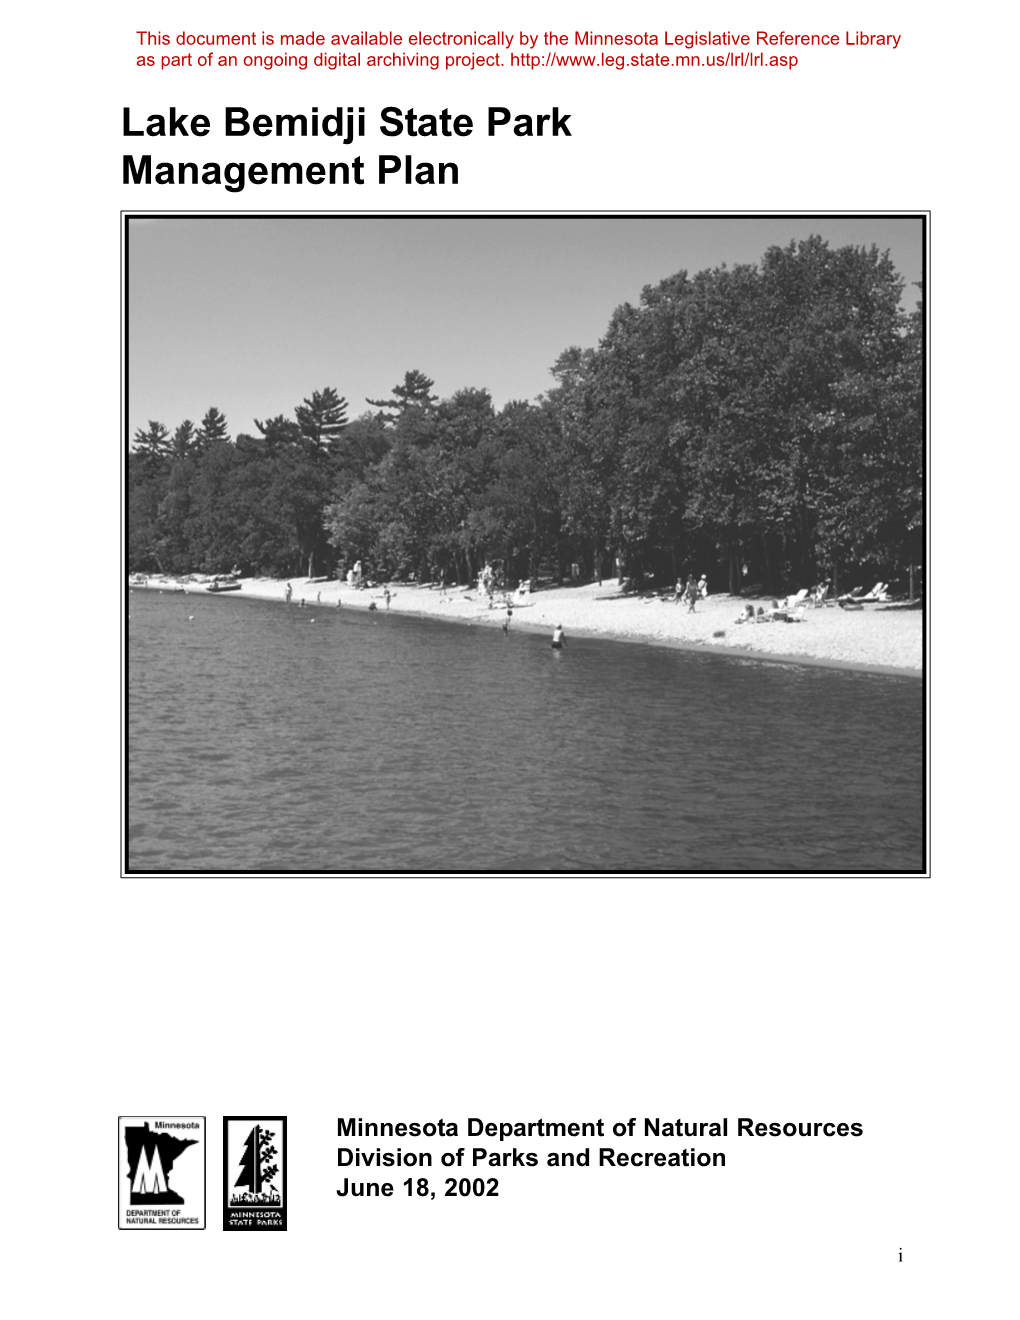 Lake Bemidji State Park Management Plan